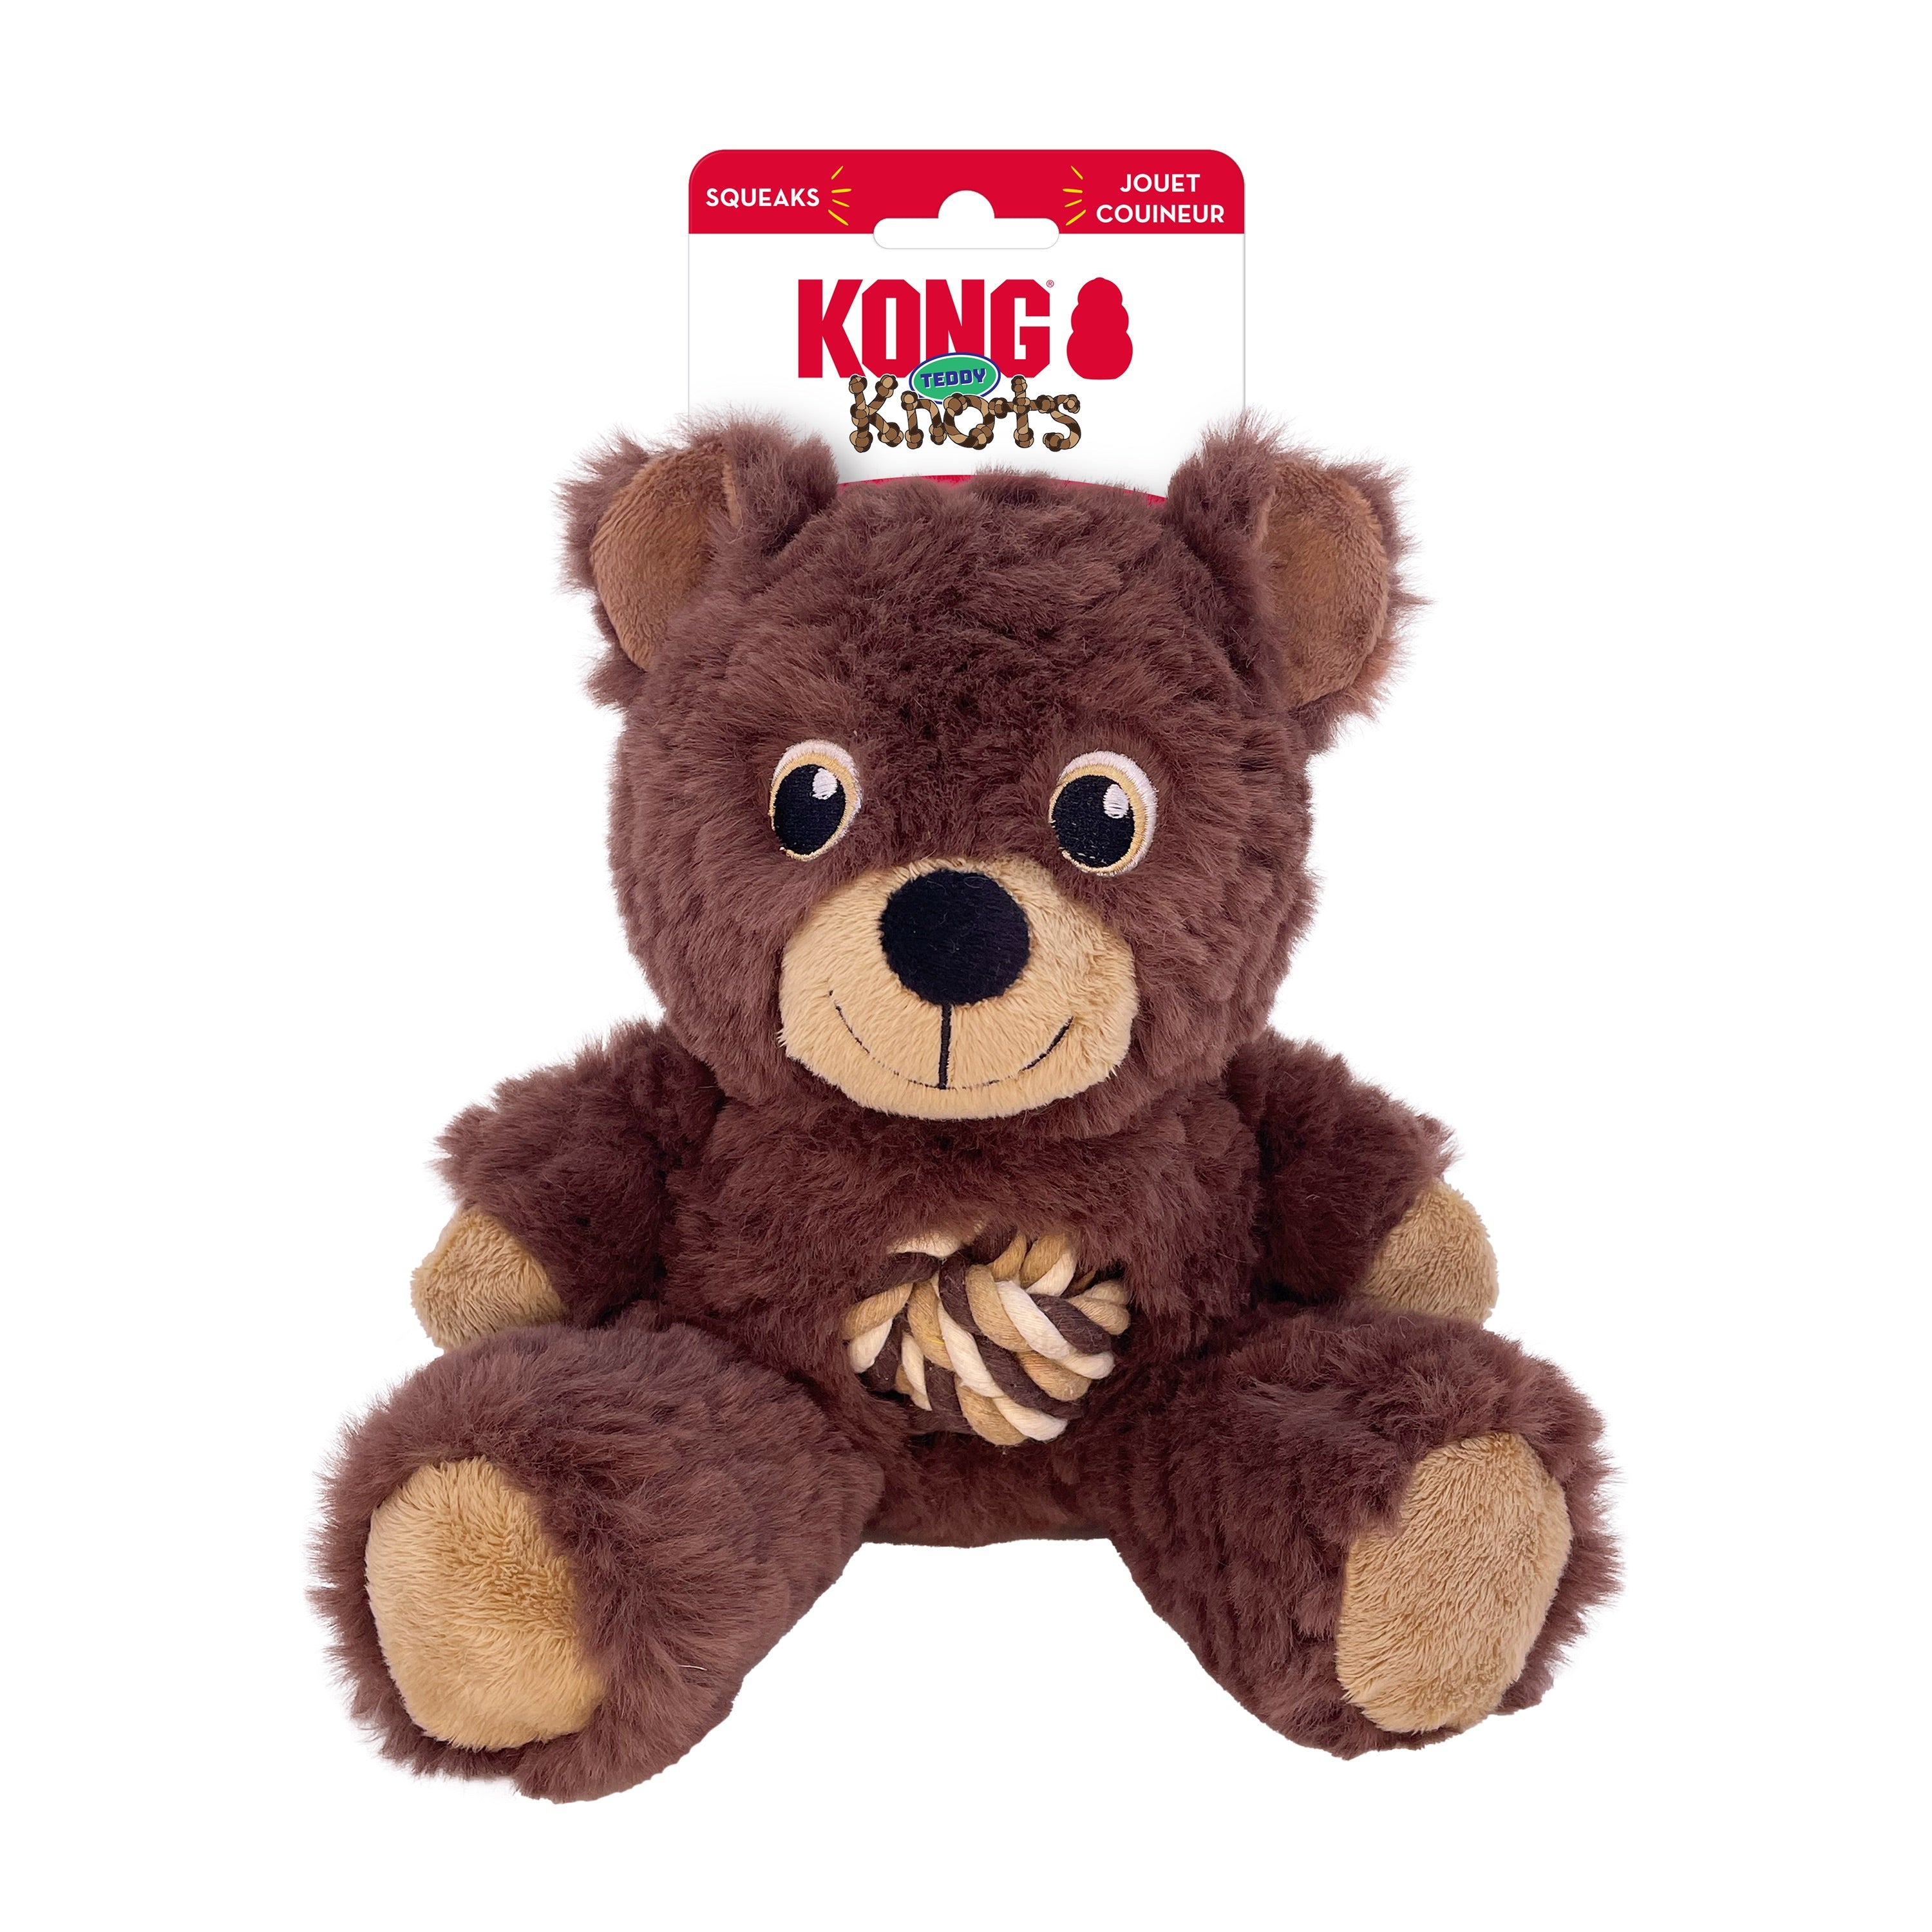 Knots Teddy - Osito con Cuerda de Kong